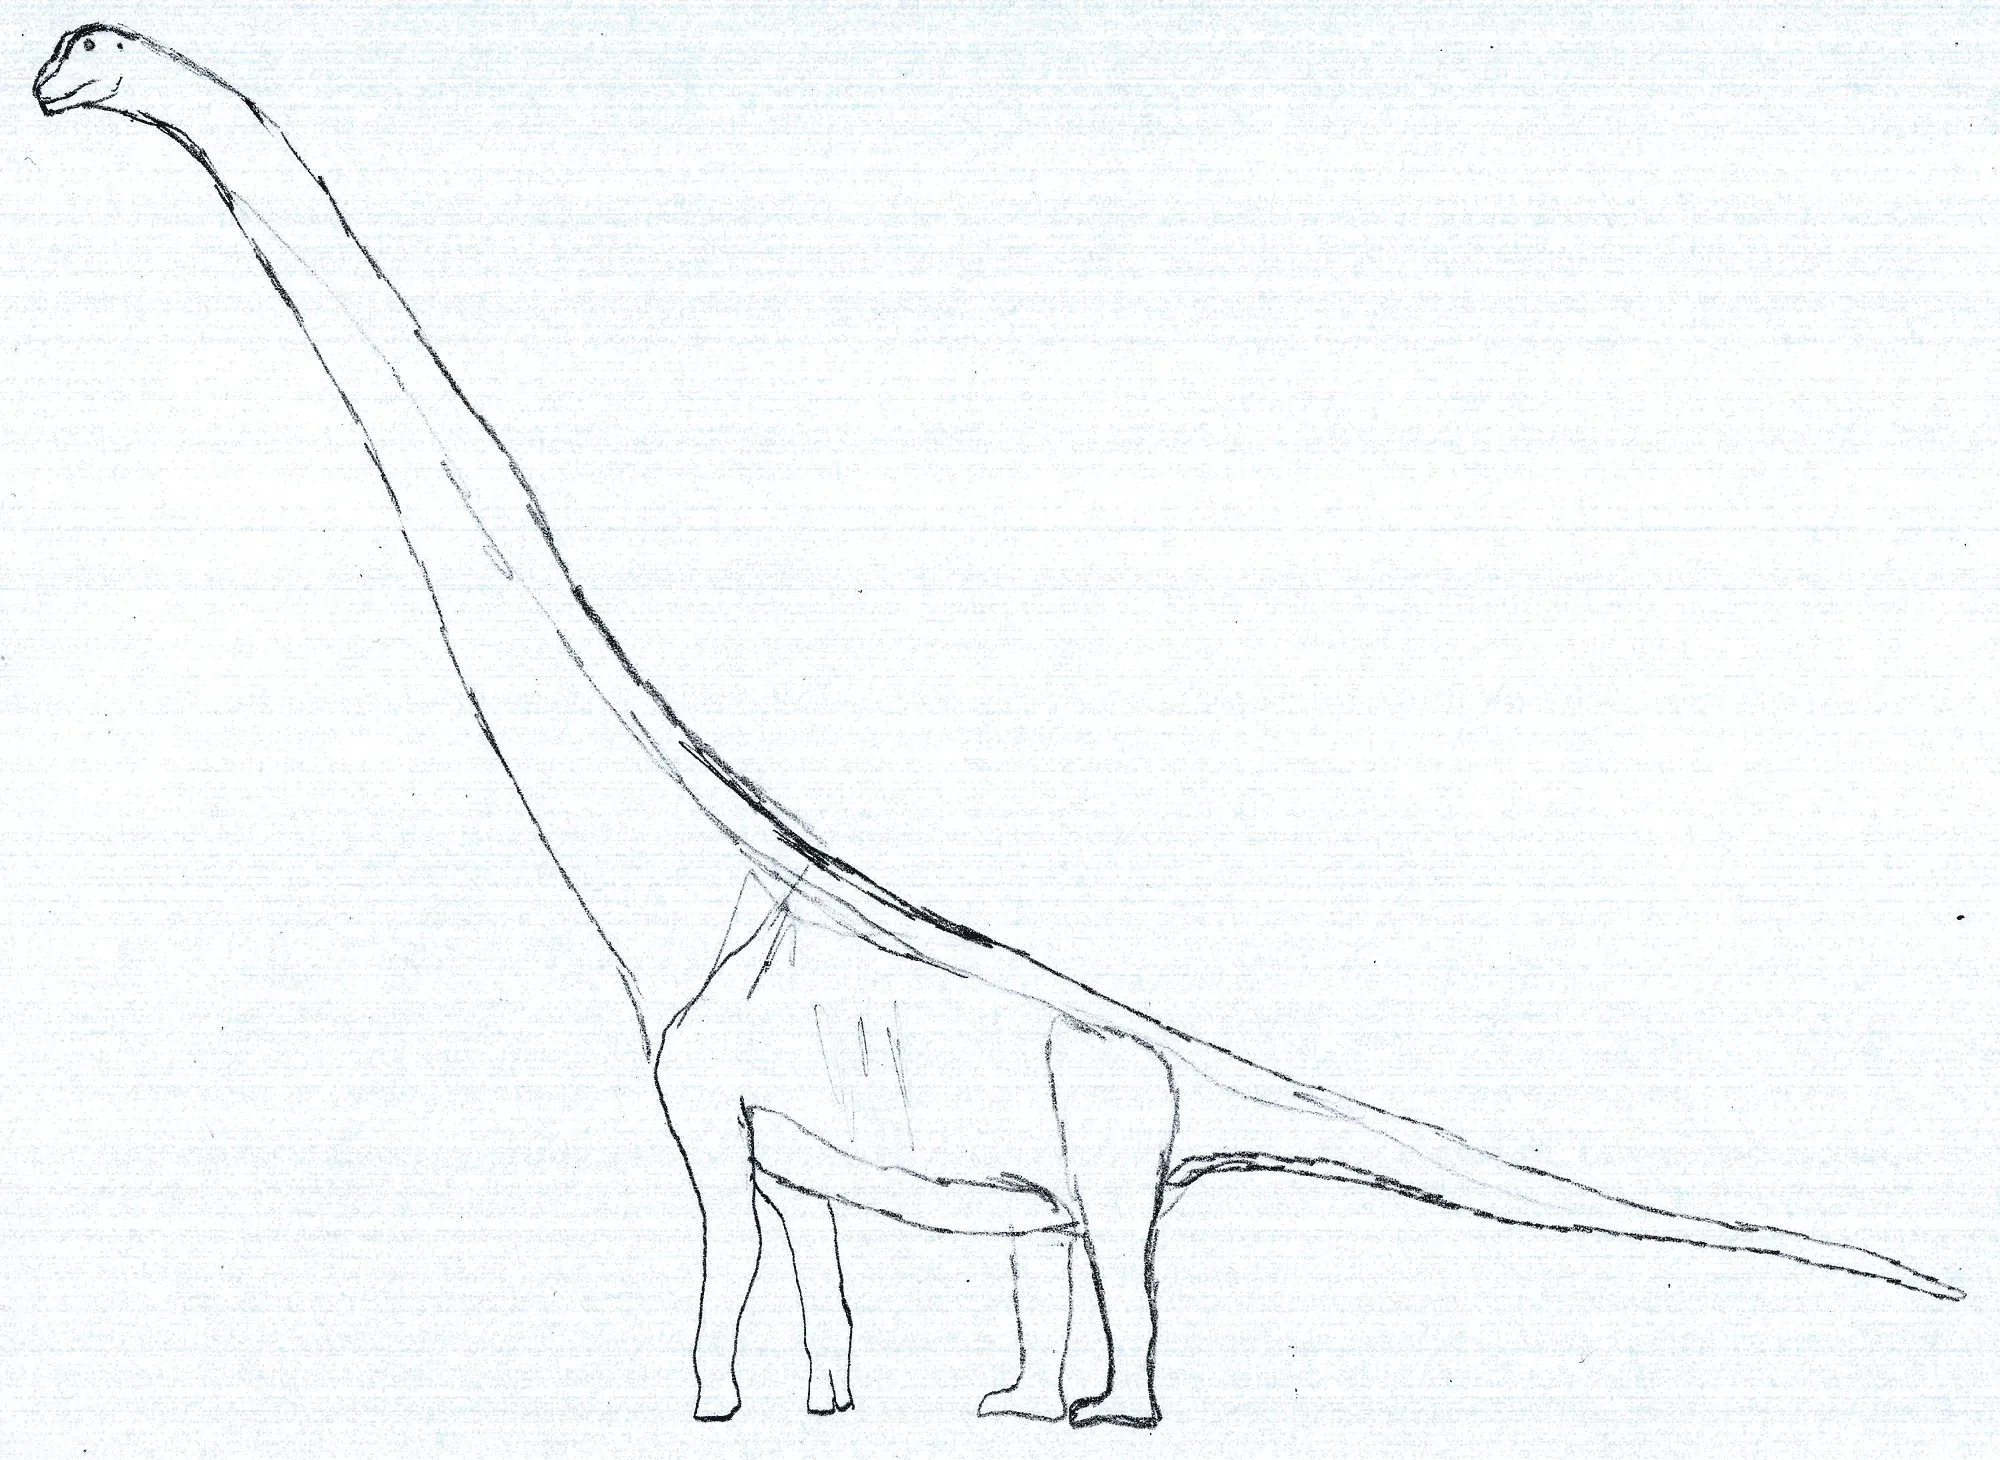 Heber Longman described the Austrosaurus in the year 1933.